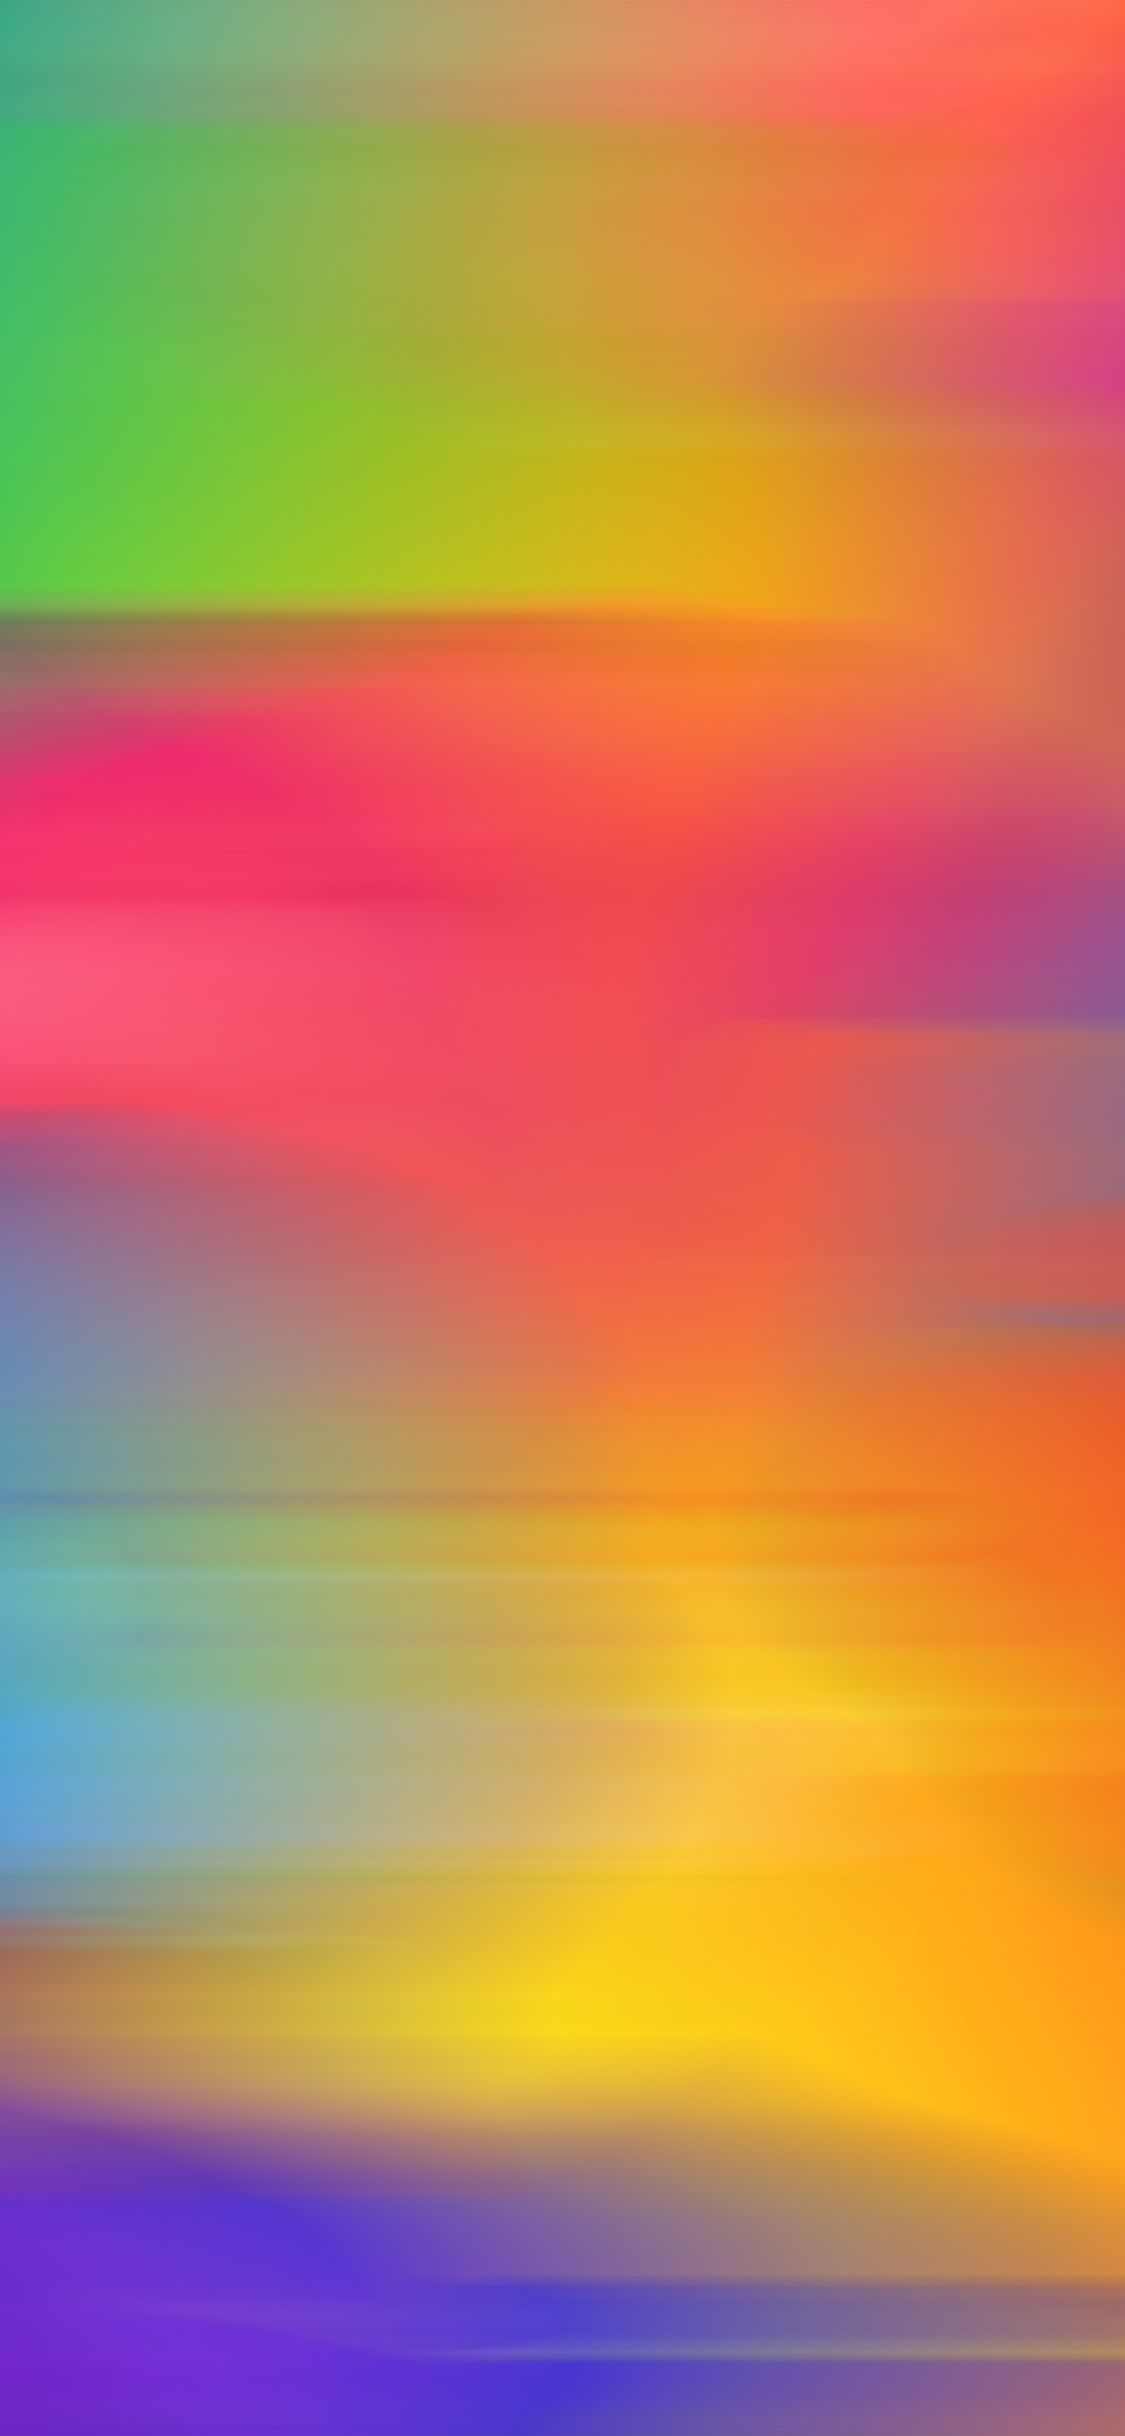 iPhone X wallpaper. rainbow color paint art ink default pattern motion